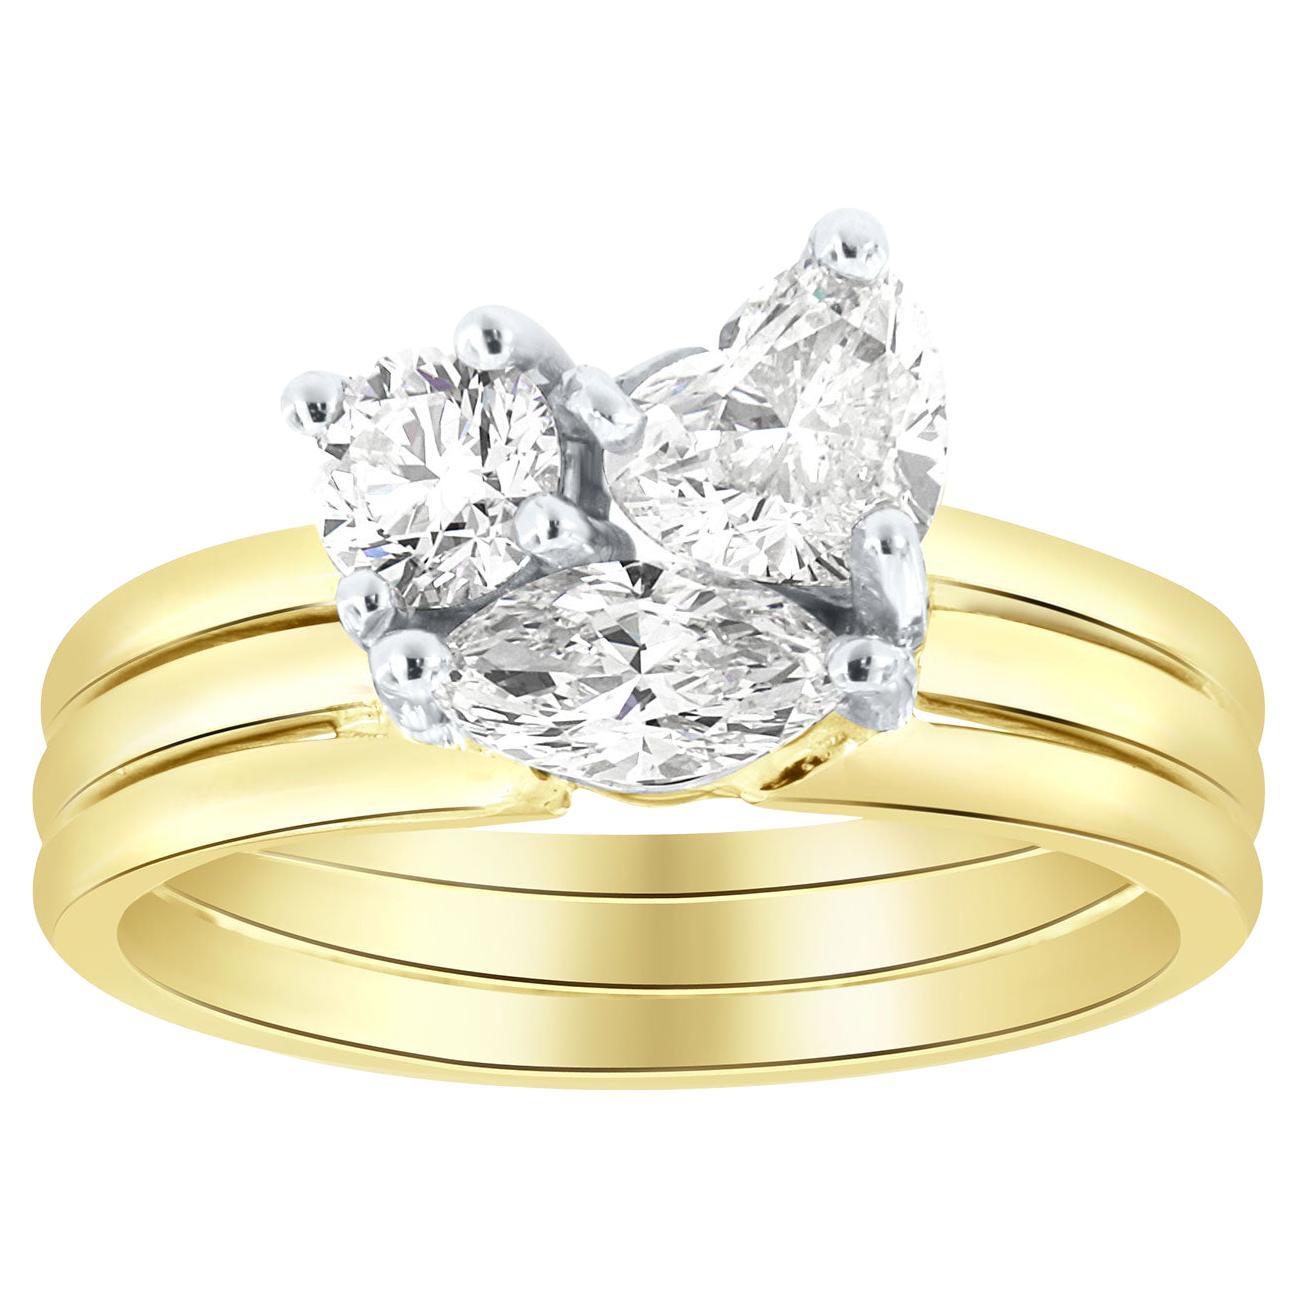 14K Yello& White Gold Mix Shapes GIA Certified Designer Diamond Ring 1.25 CT. TW